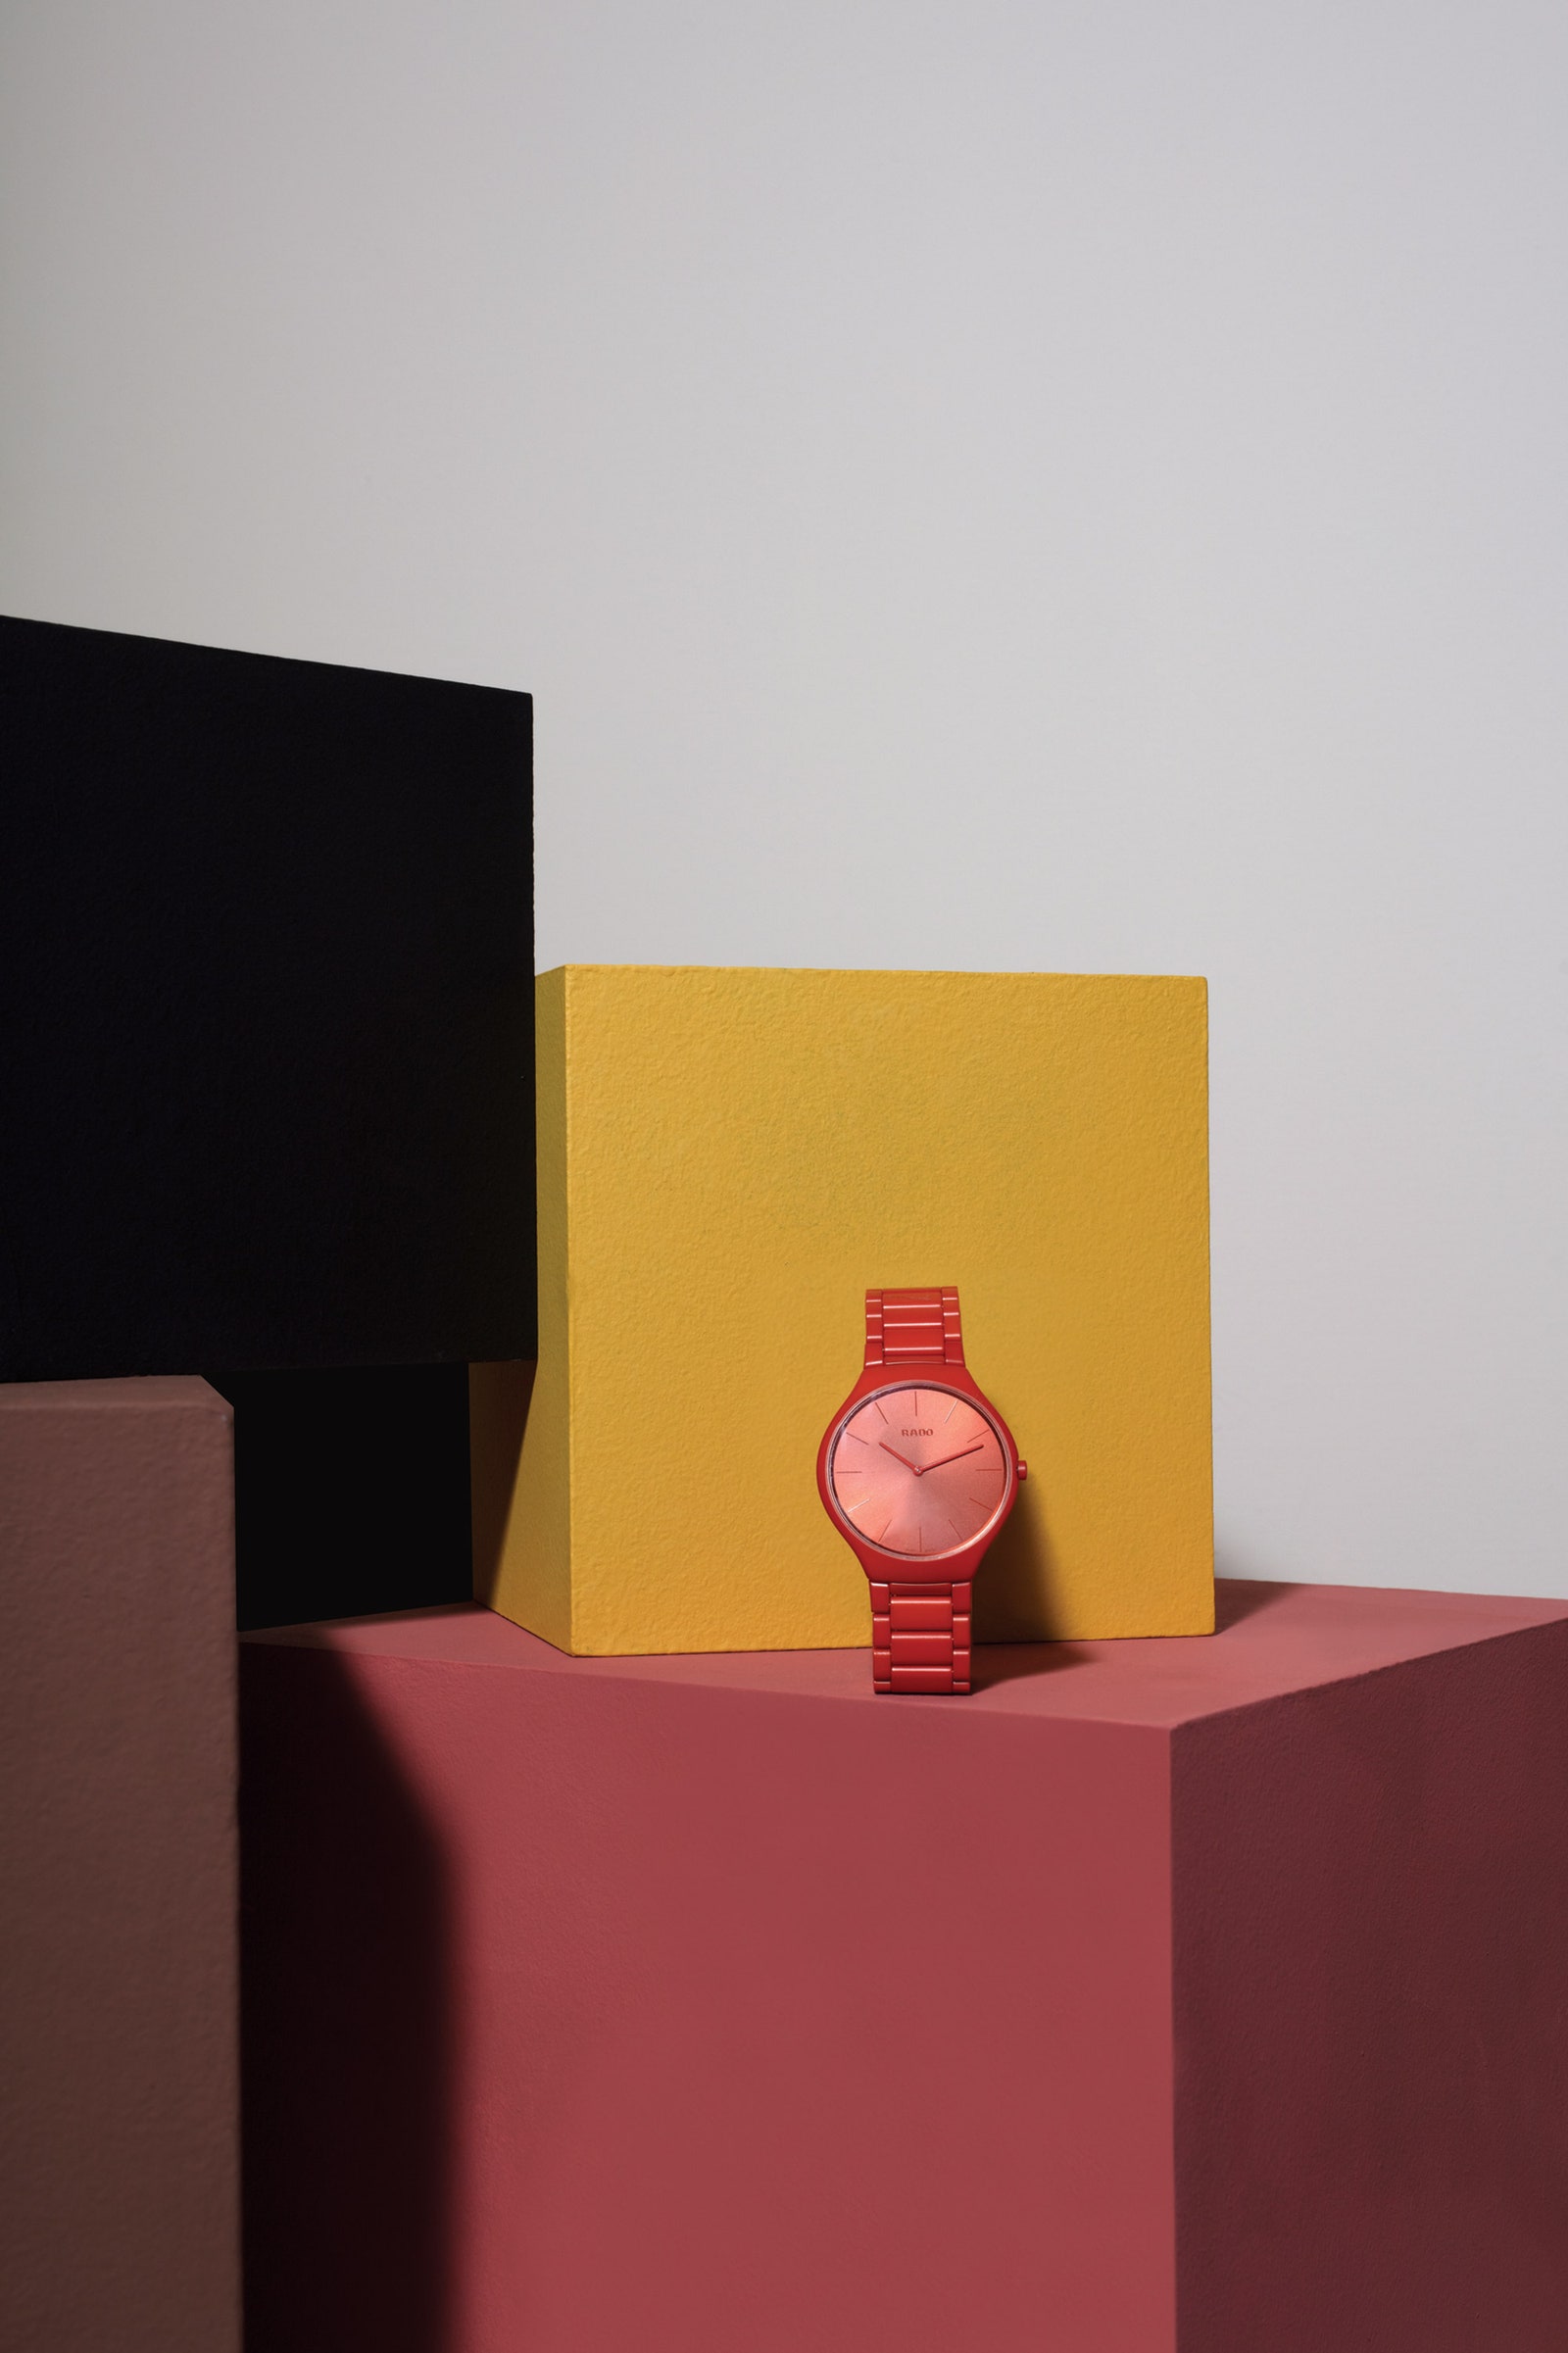 Rado представила коллекцию часов в цветах “архитектурной полихромии” Ле Корбюзье